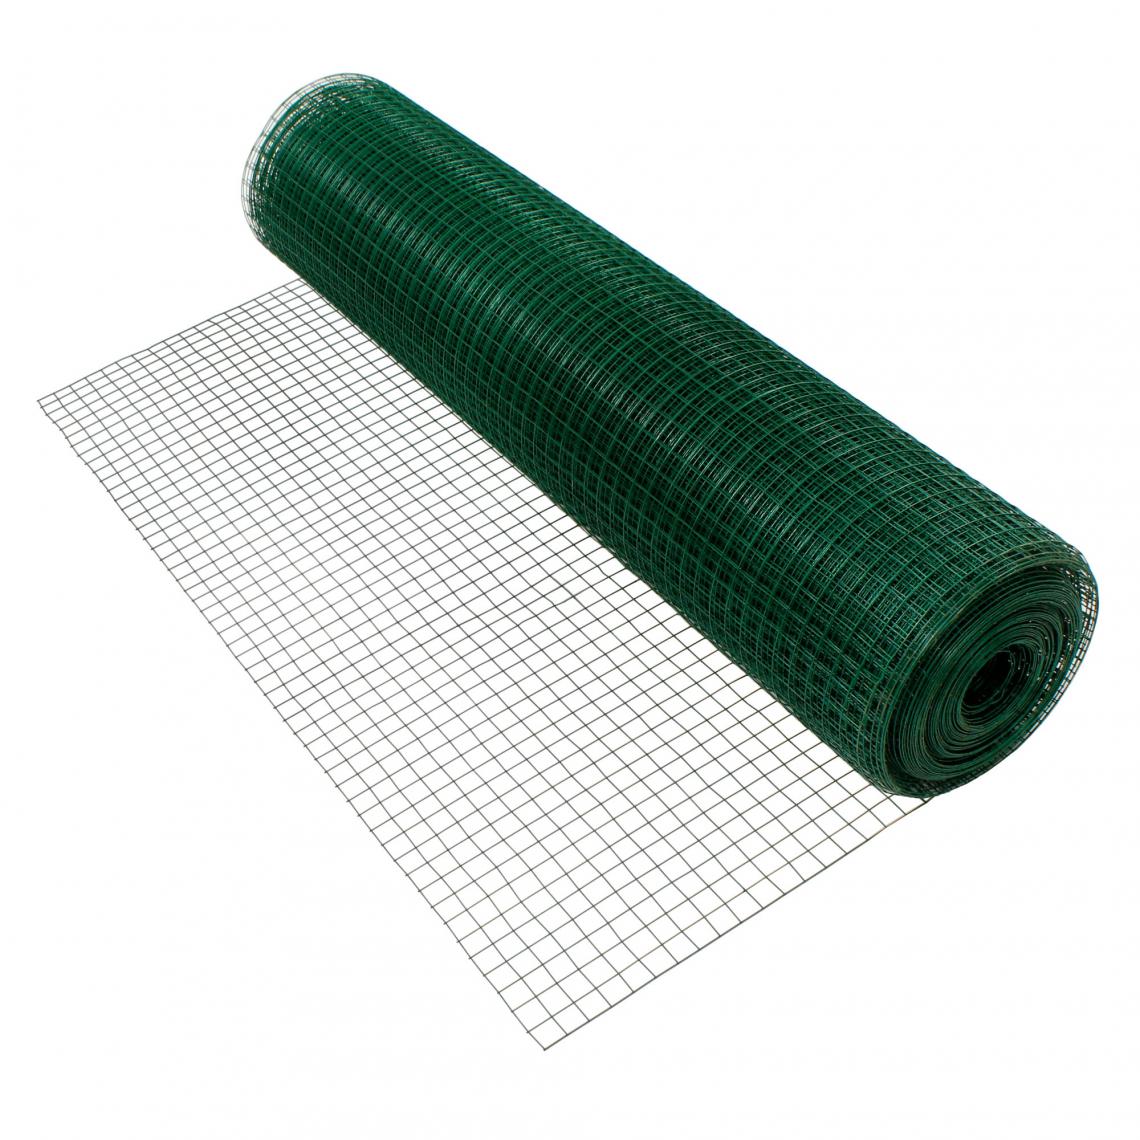 Ecd Germany - Grillage maille de jardin vert clôture fil volière flexible 1,2 mm 25x25 mm 10m - Clôture grillagée